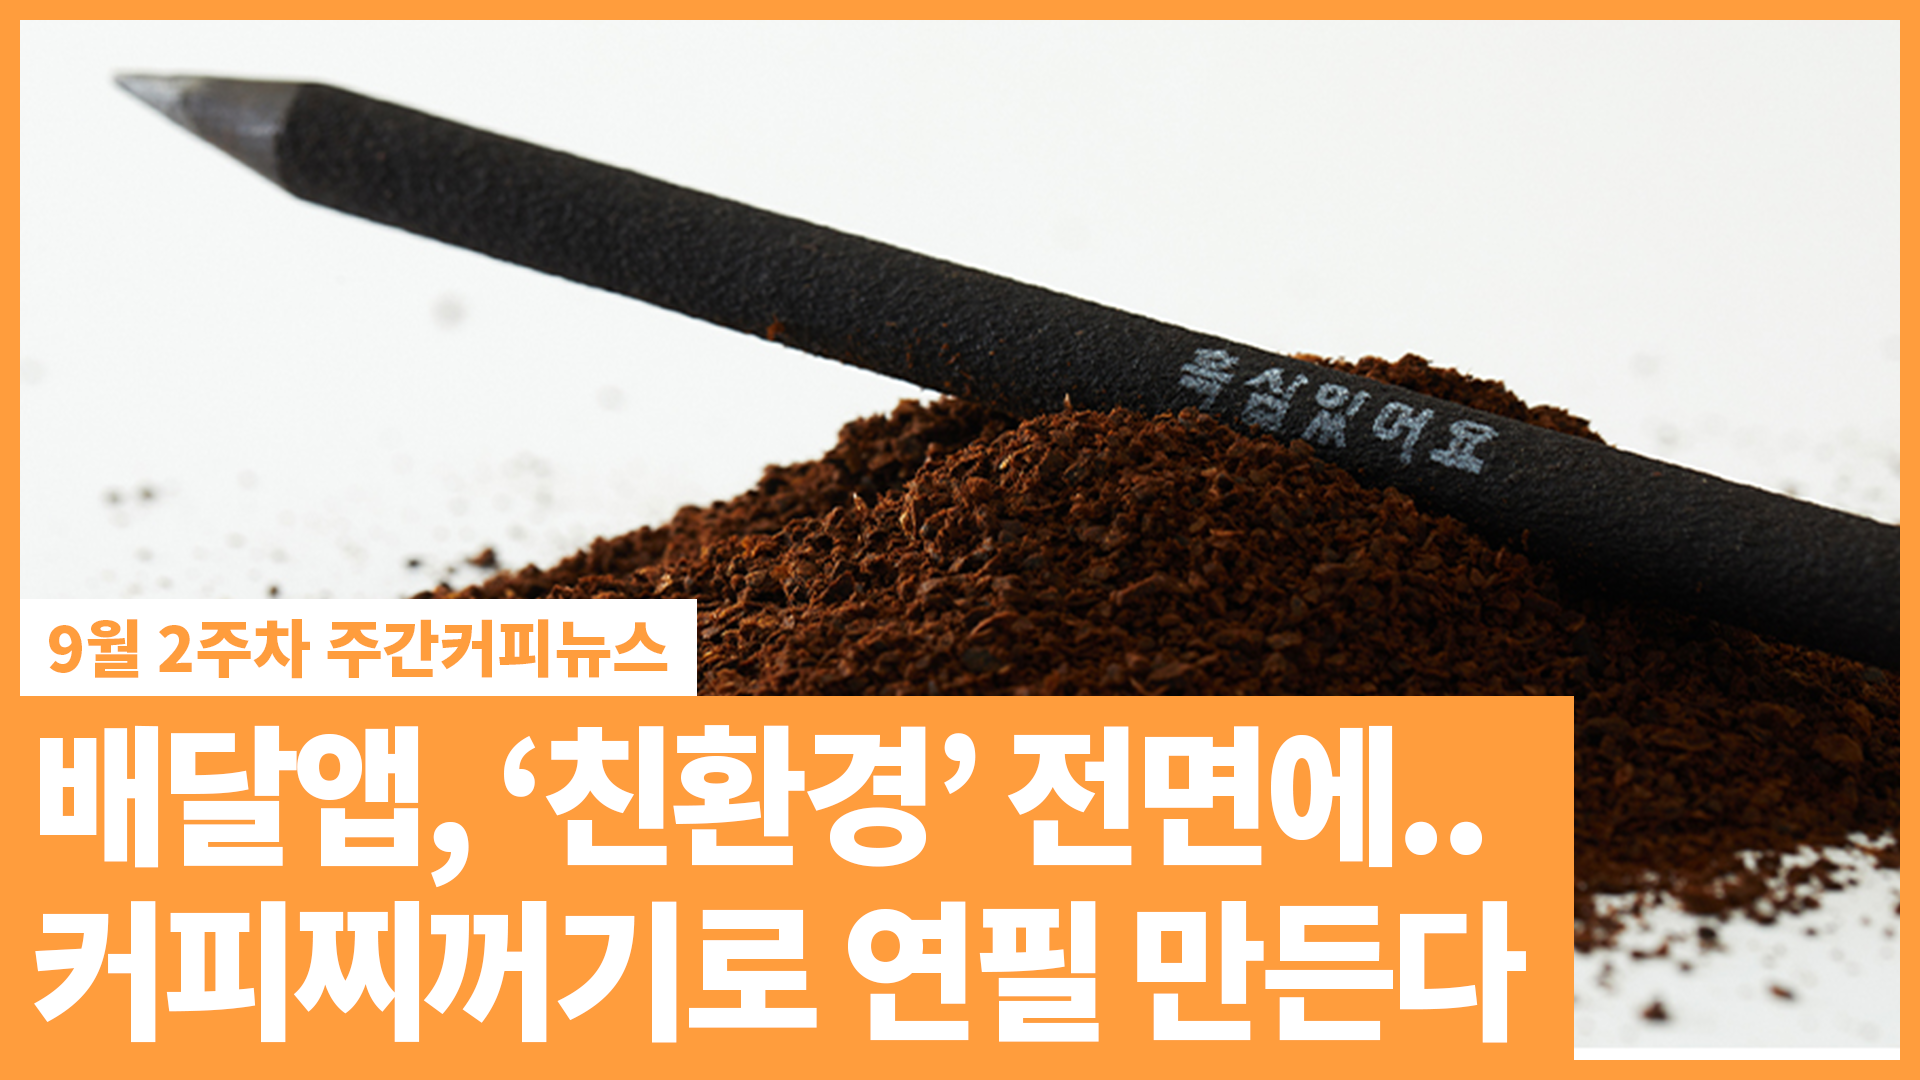 배달앱, '친환경' 전면에.. 커피찌꺼기로 연필까지 만든다 | 9월 2주 주간커피뉴스, 커피TV